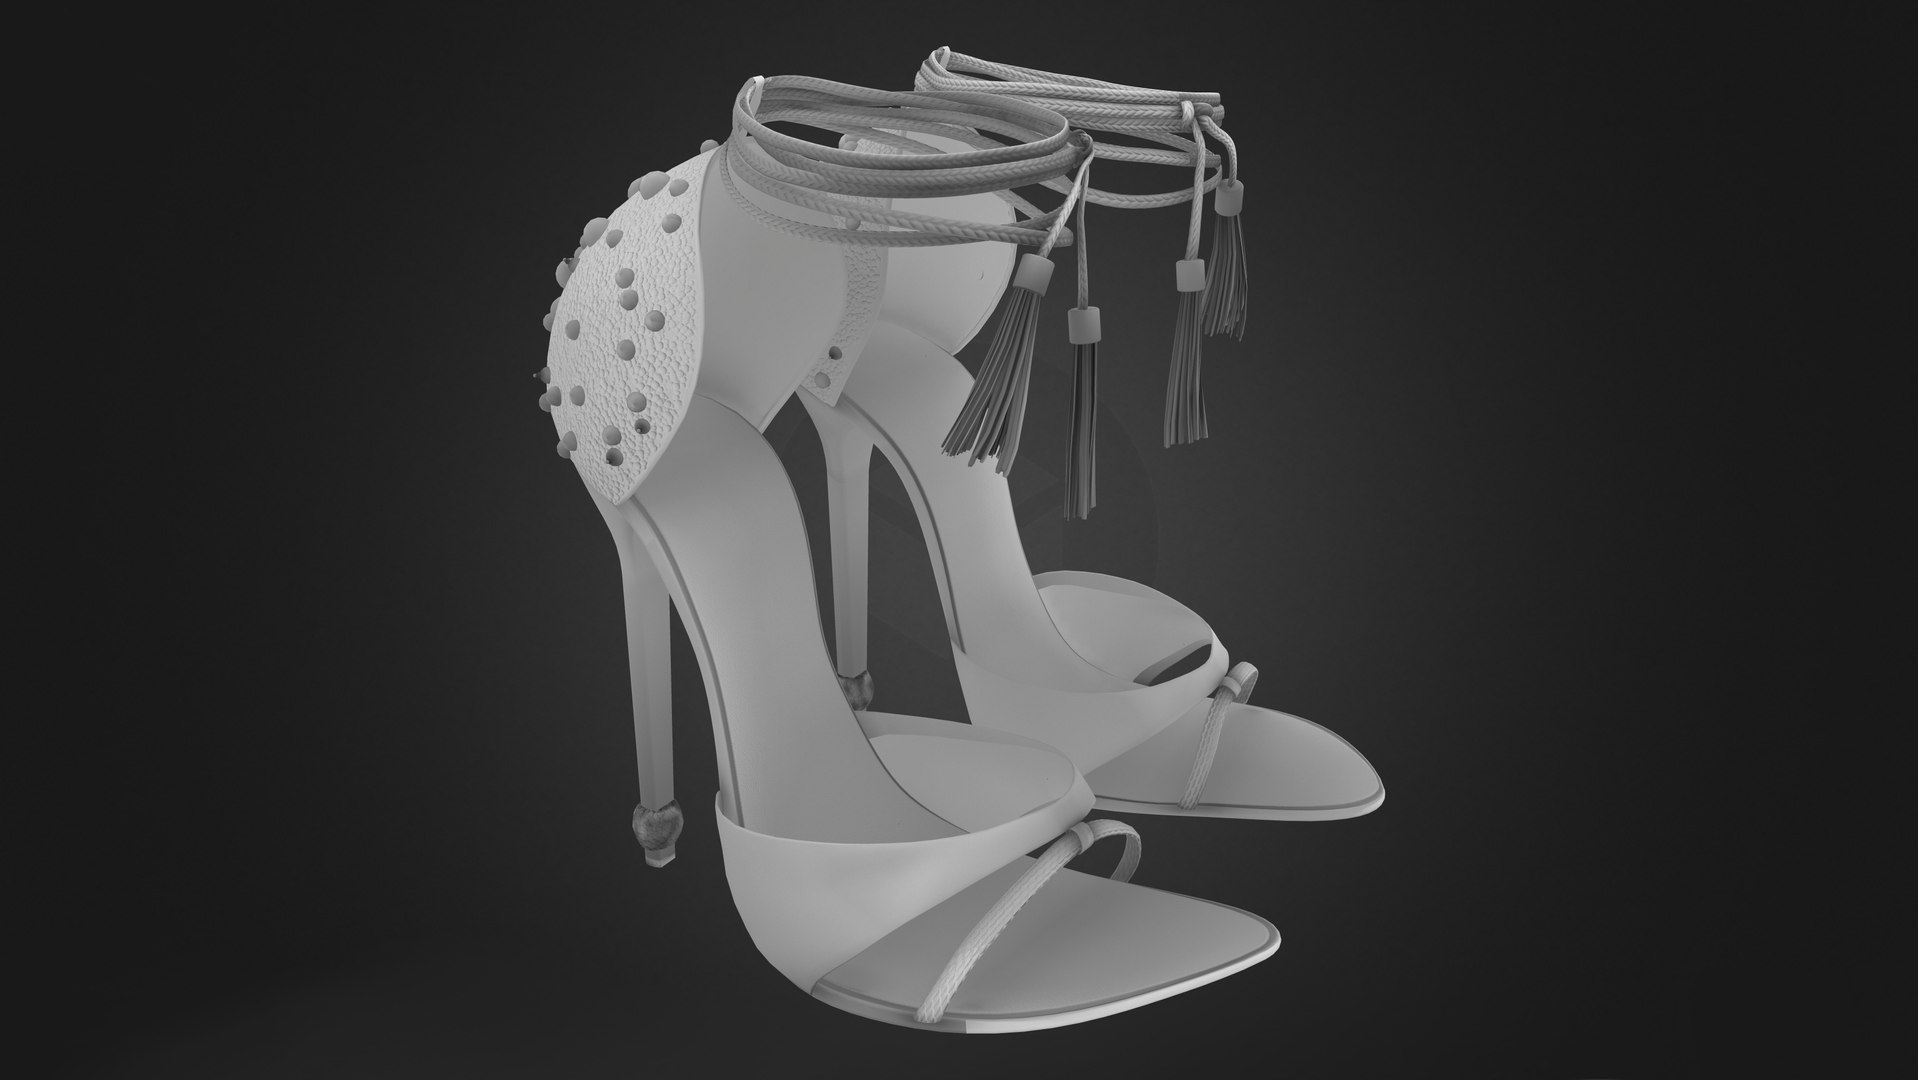 Silver Black High Heels 3D model - TurboSquid 1869103